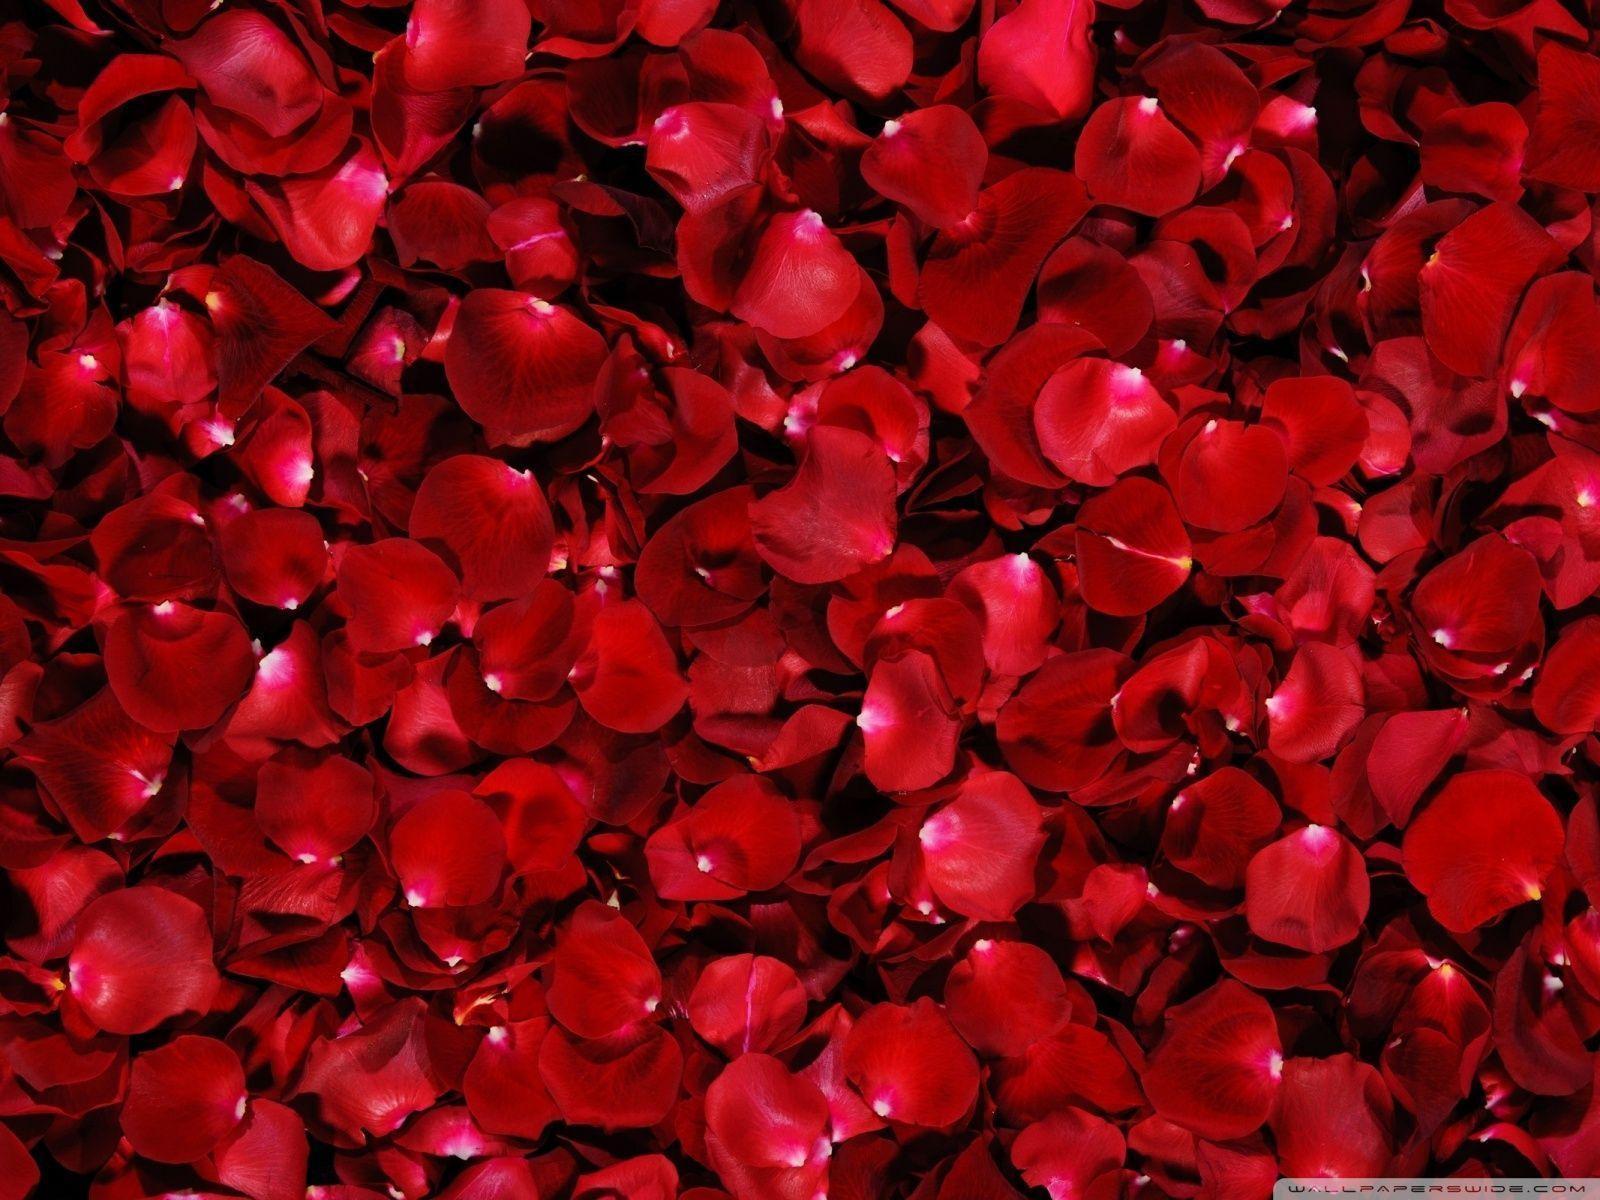 Wallpaper For > Wallpaper Of Roses For Desktop Background